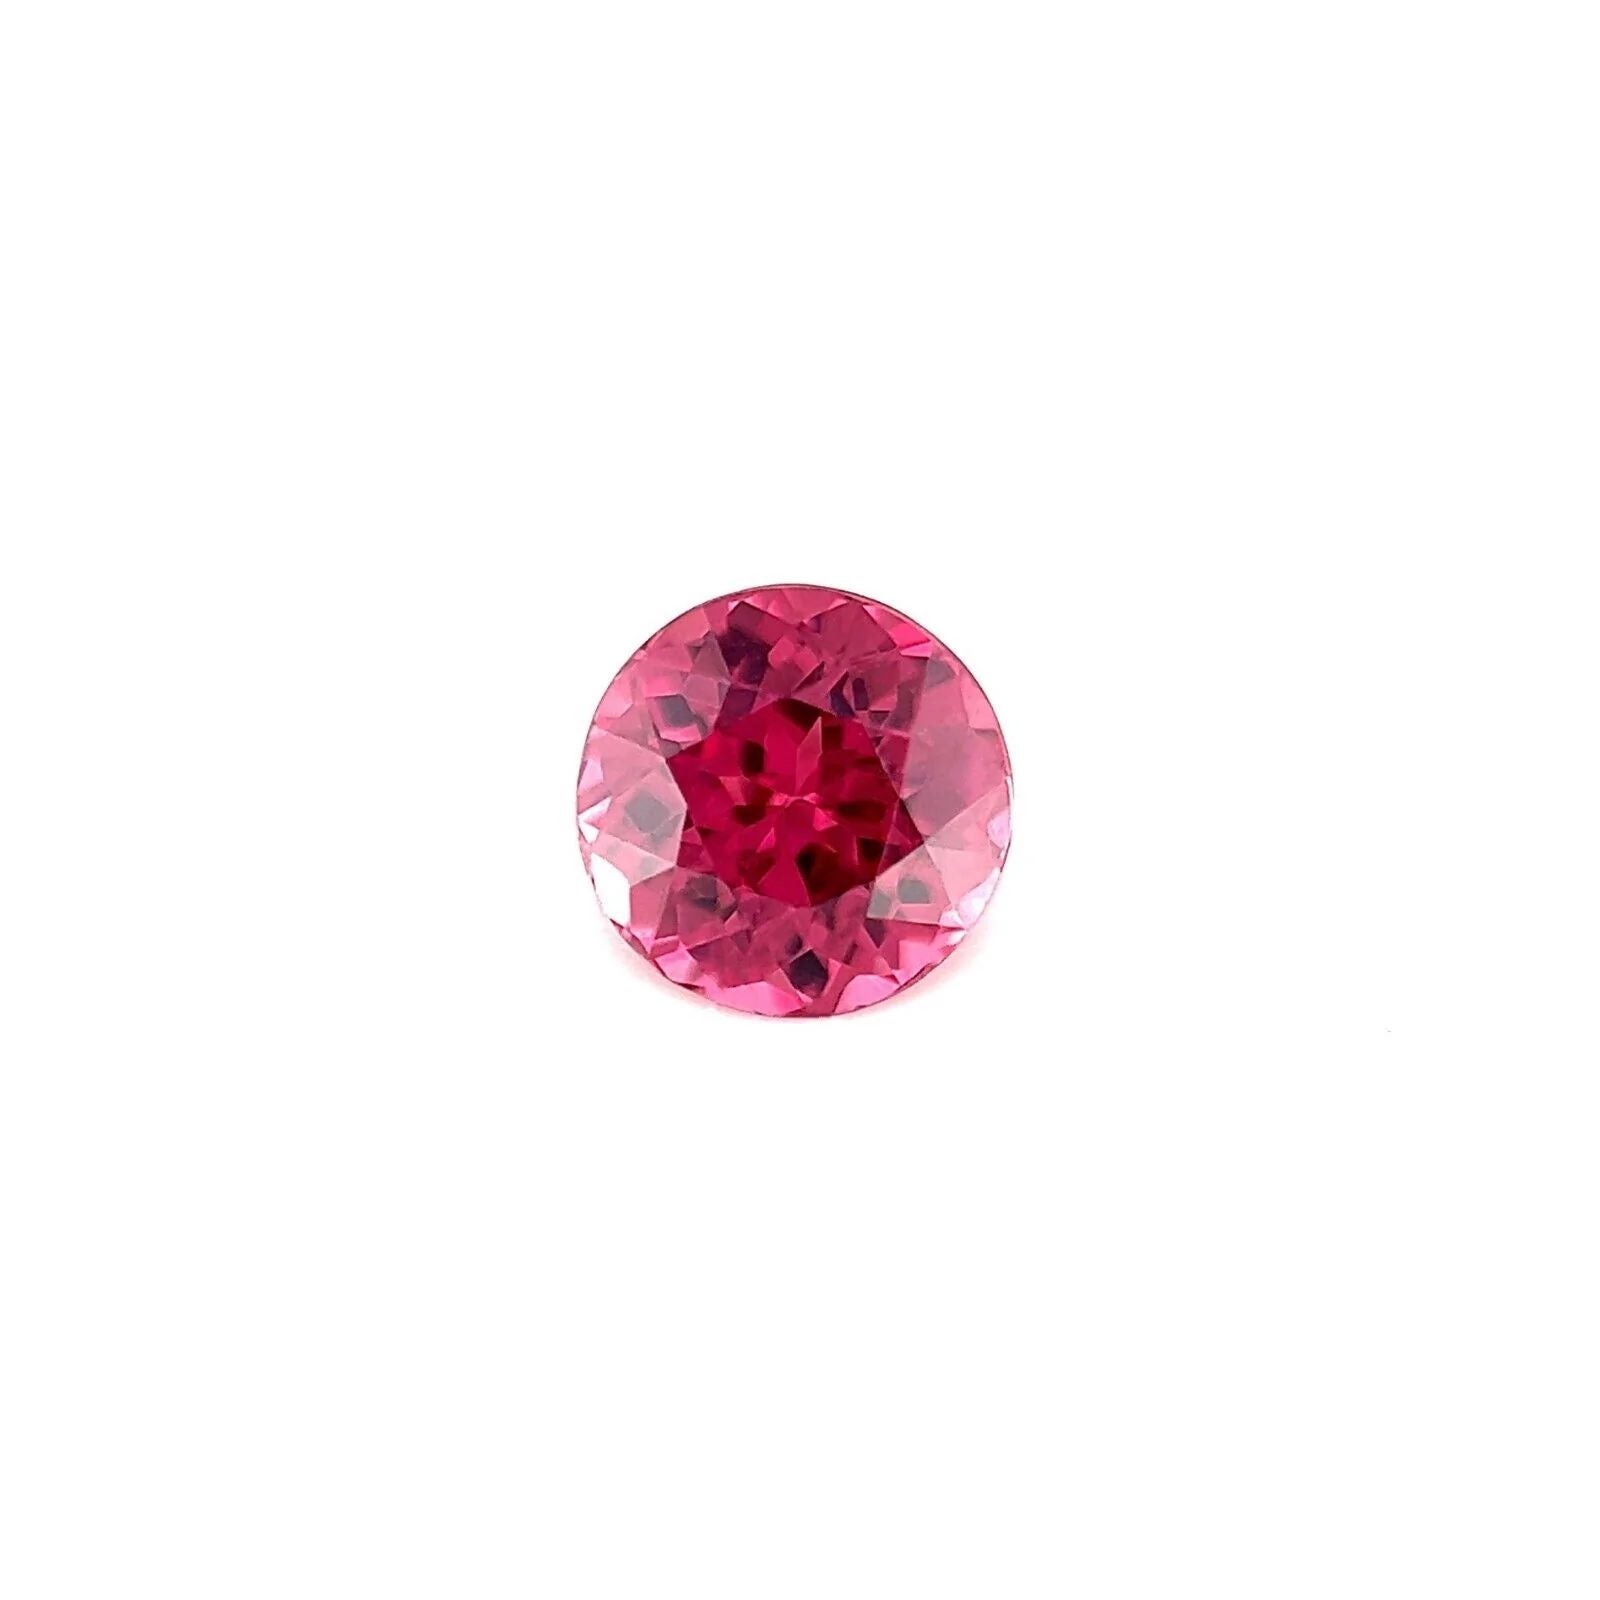 1.11ct Vivid Purple Pink Rhodolite Garnet Round Brilliant Cut Gemstone VS For Sale